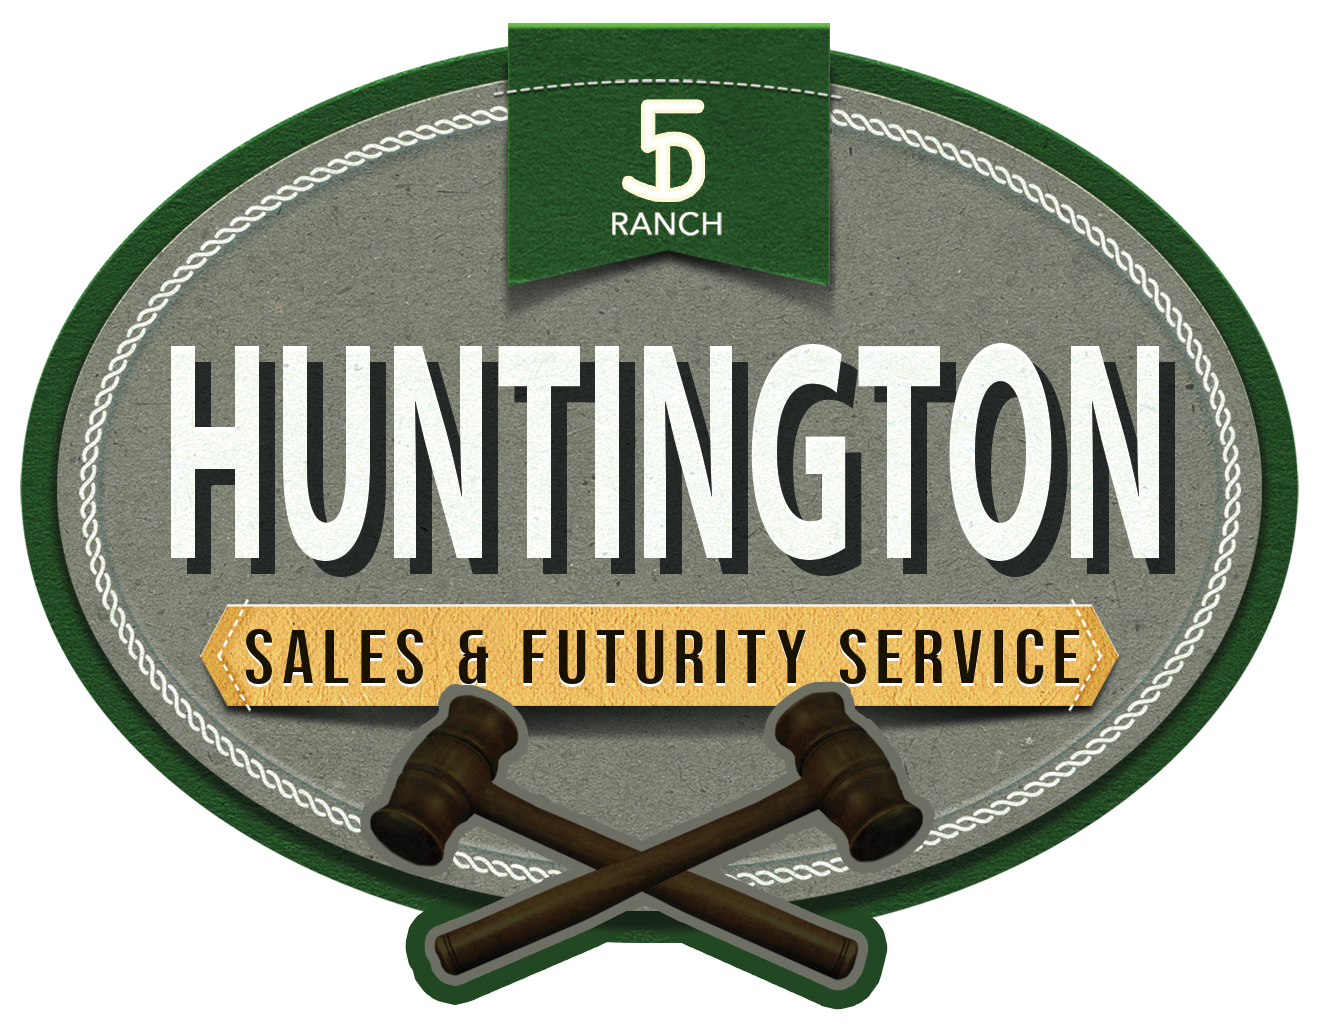 Huntington Sales